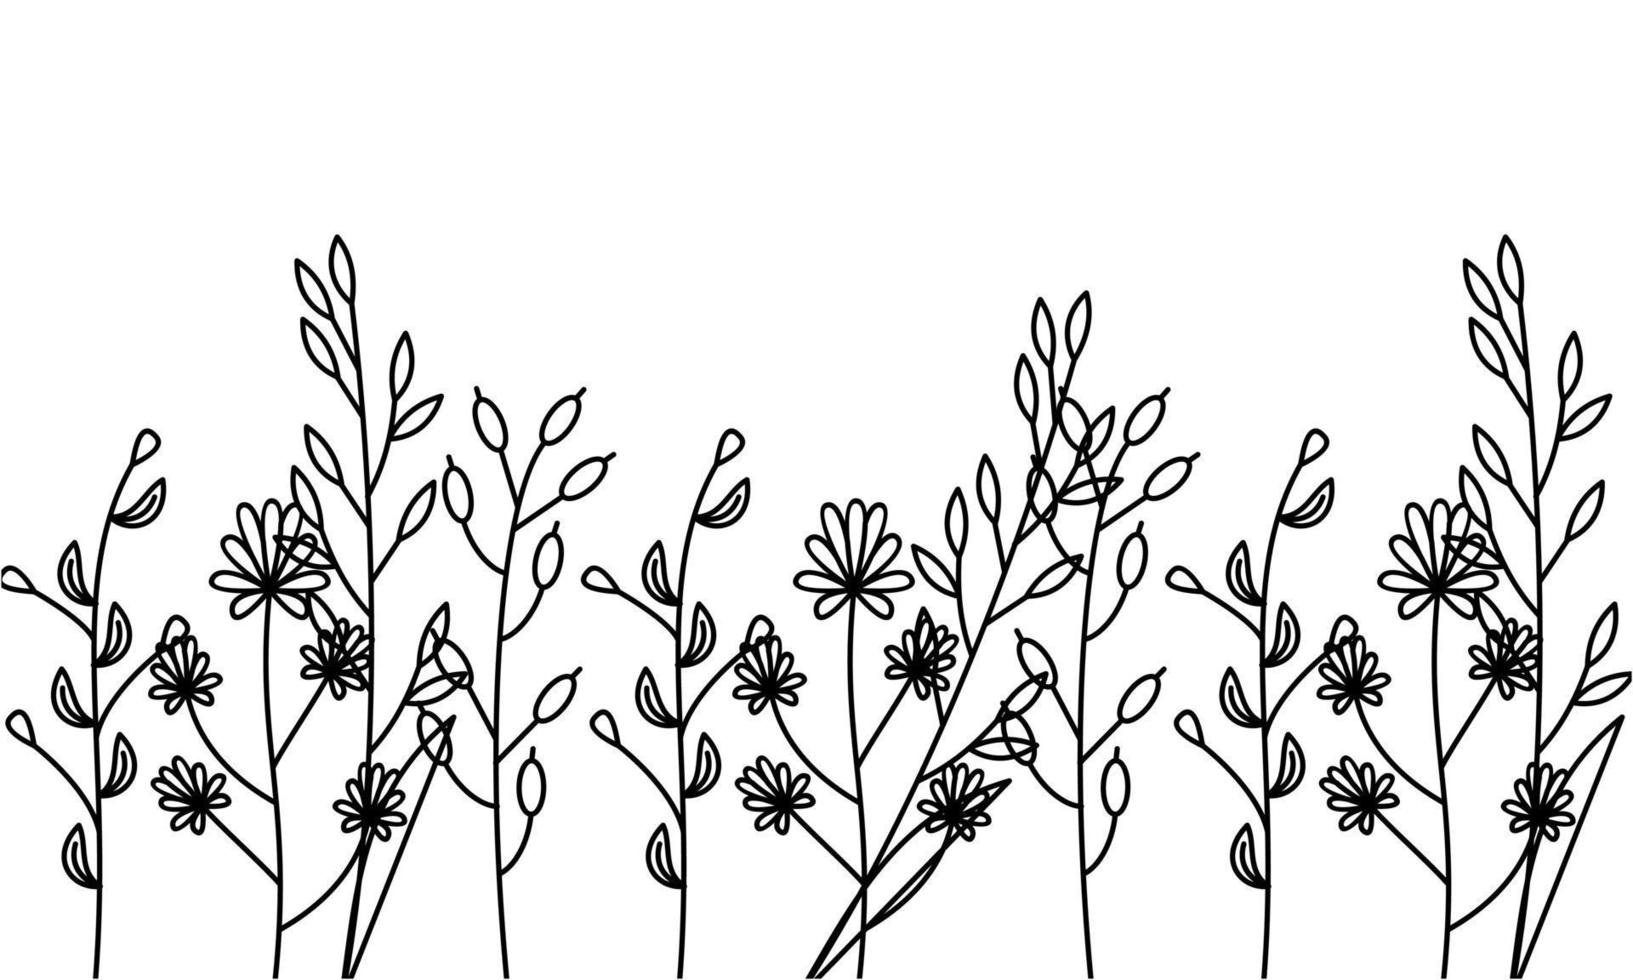 schwarz Silhouetten von Gras, Blumen und Kräuter isoliert auf Weiß Hintergrund vektor